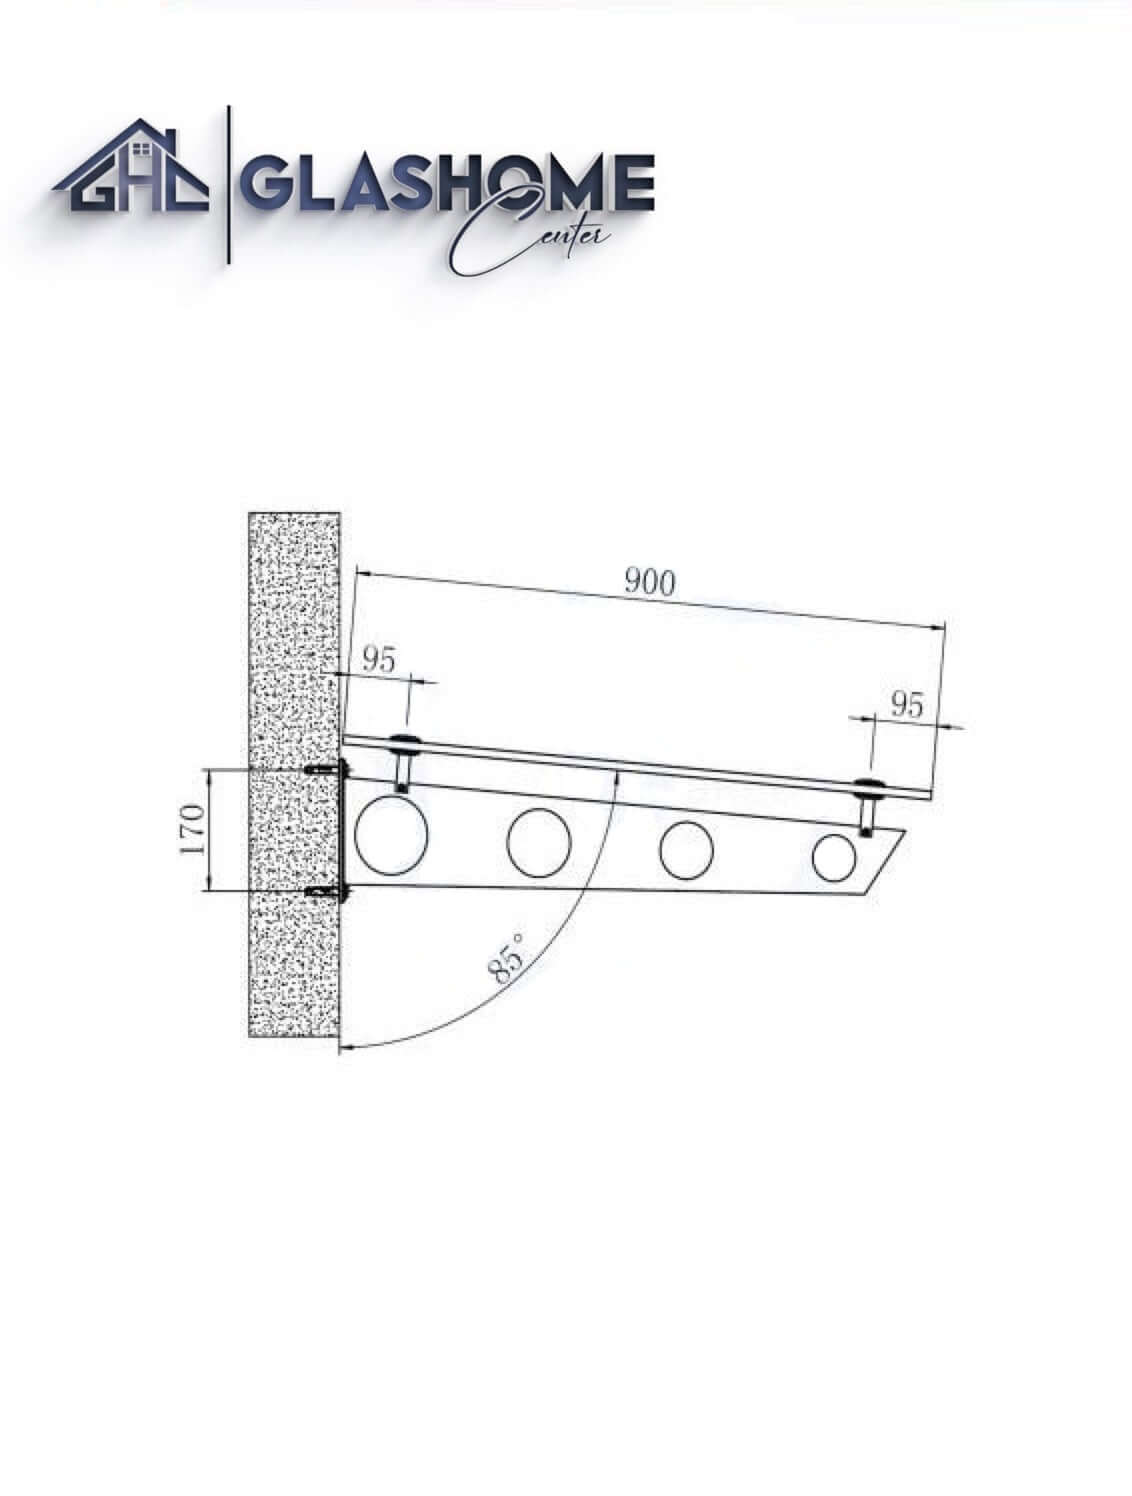 GlasHomeCenter - Glasvordach - Milchglas - 250x90cm - 13,1mm VSG - incl. 3 Edelstahlhalterungen variante "Stoccolma"